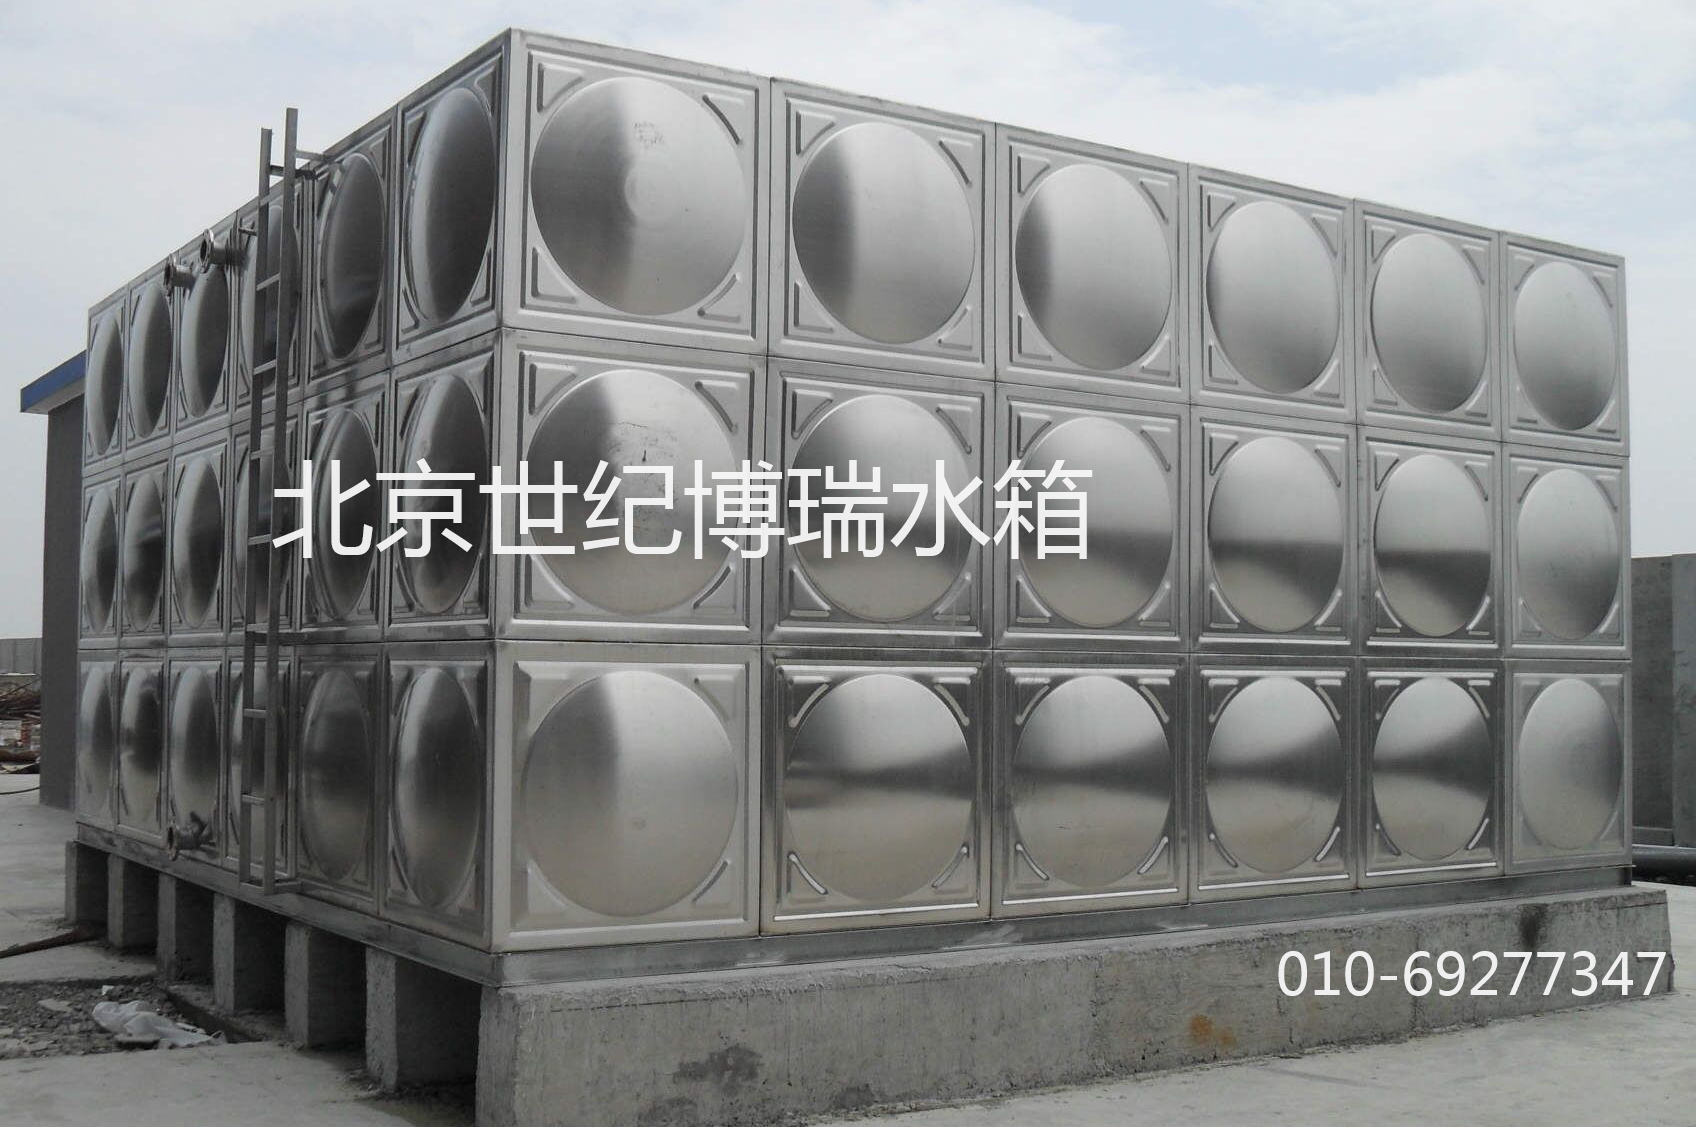 中国不锈钢冷热水箱需求大增势快成市场第二